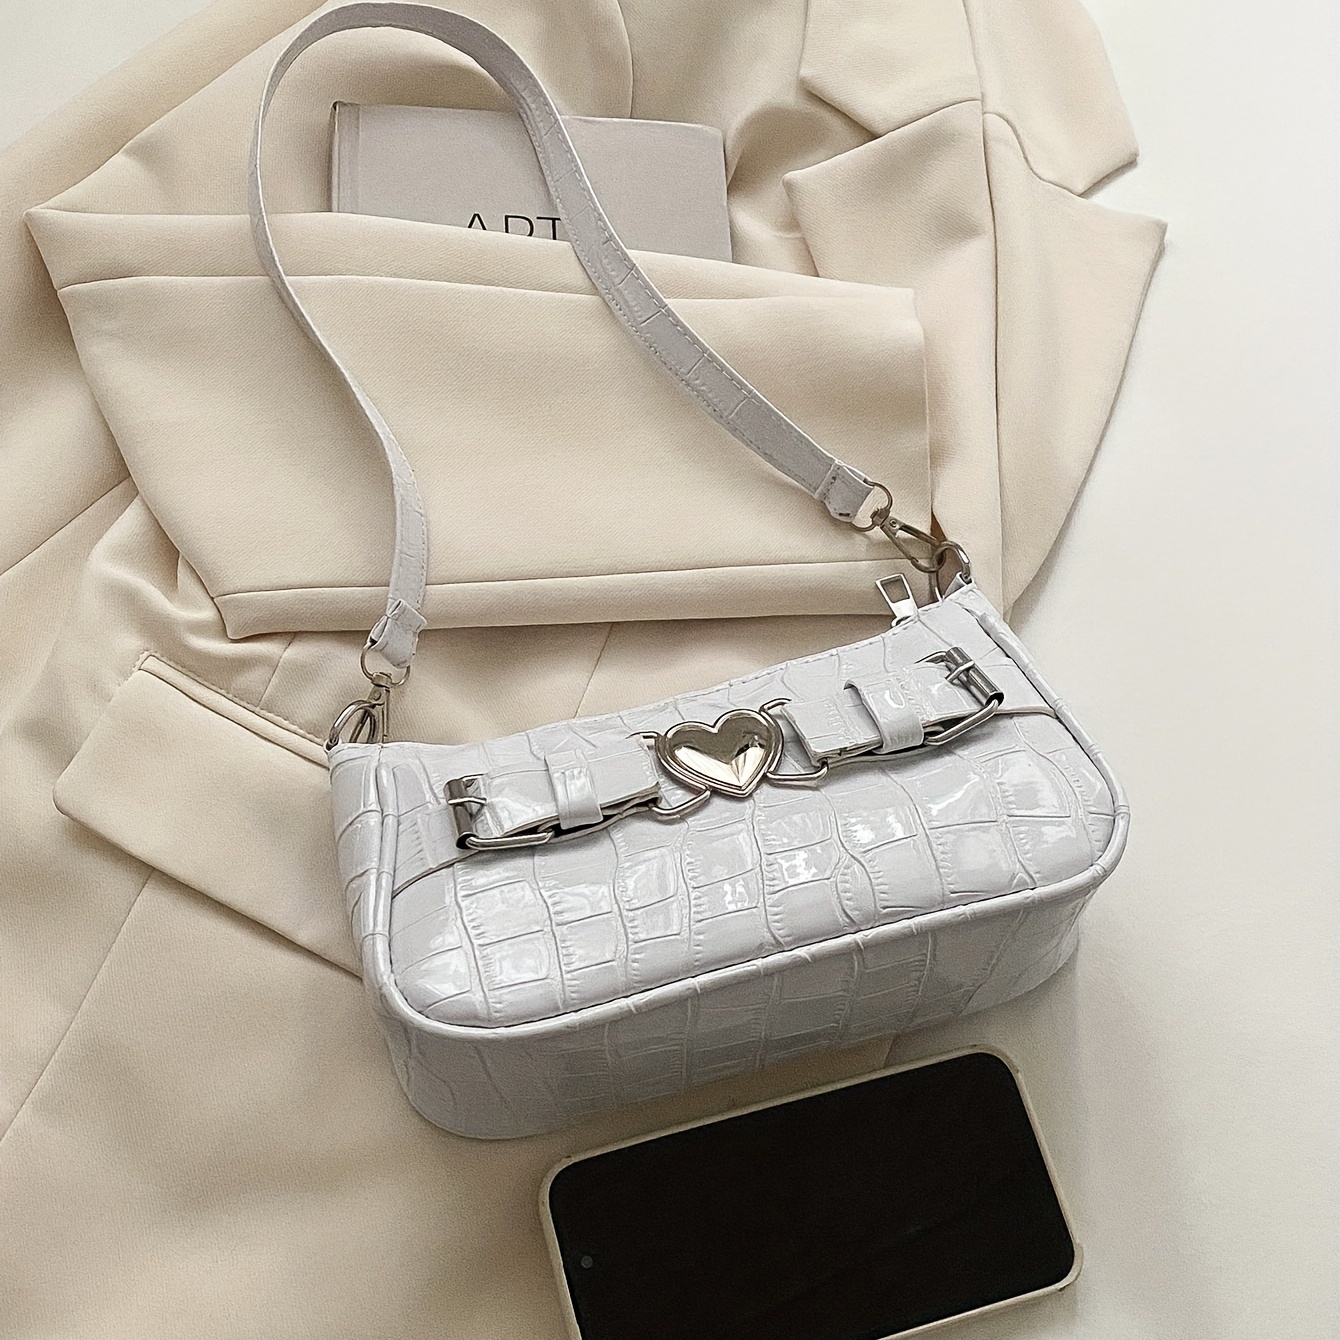 Crocodile Embossed Baguette Bag, Fashion Y2k Shoulder Bag, Women's